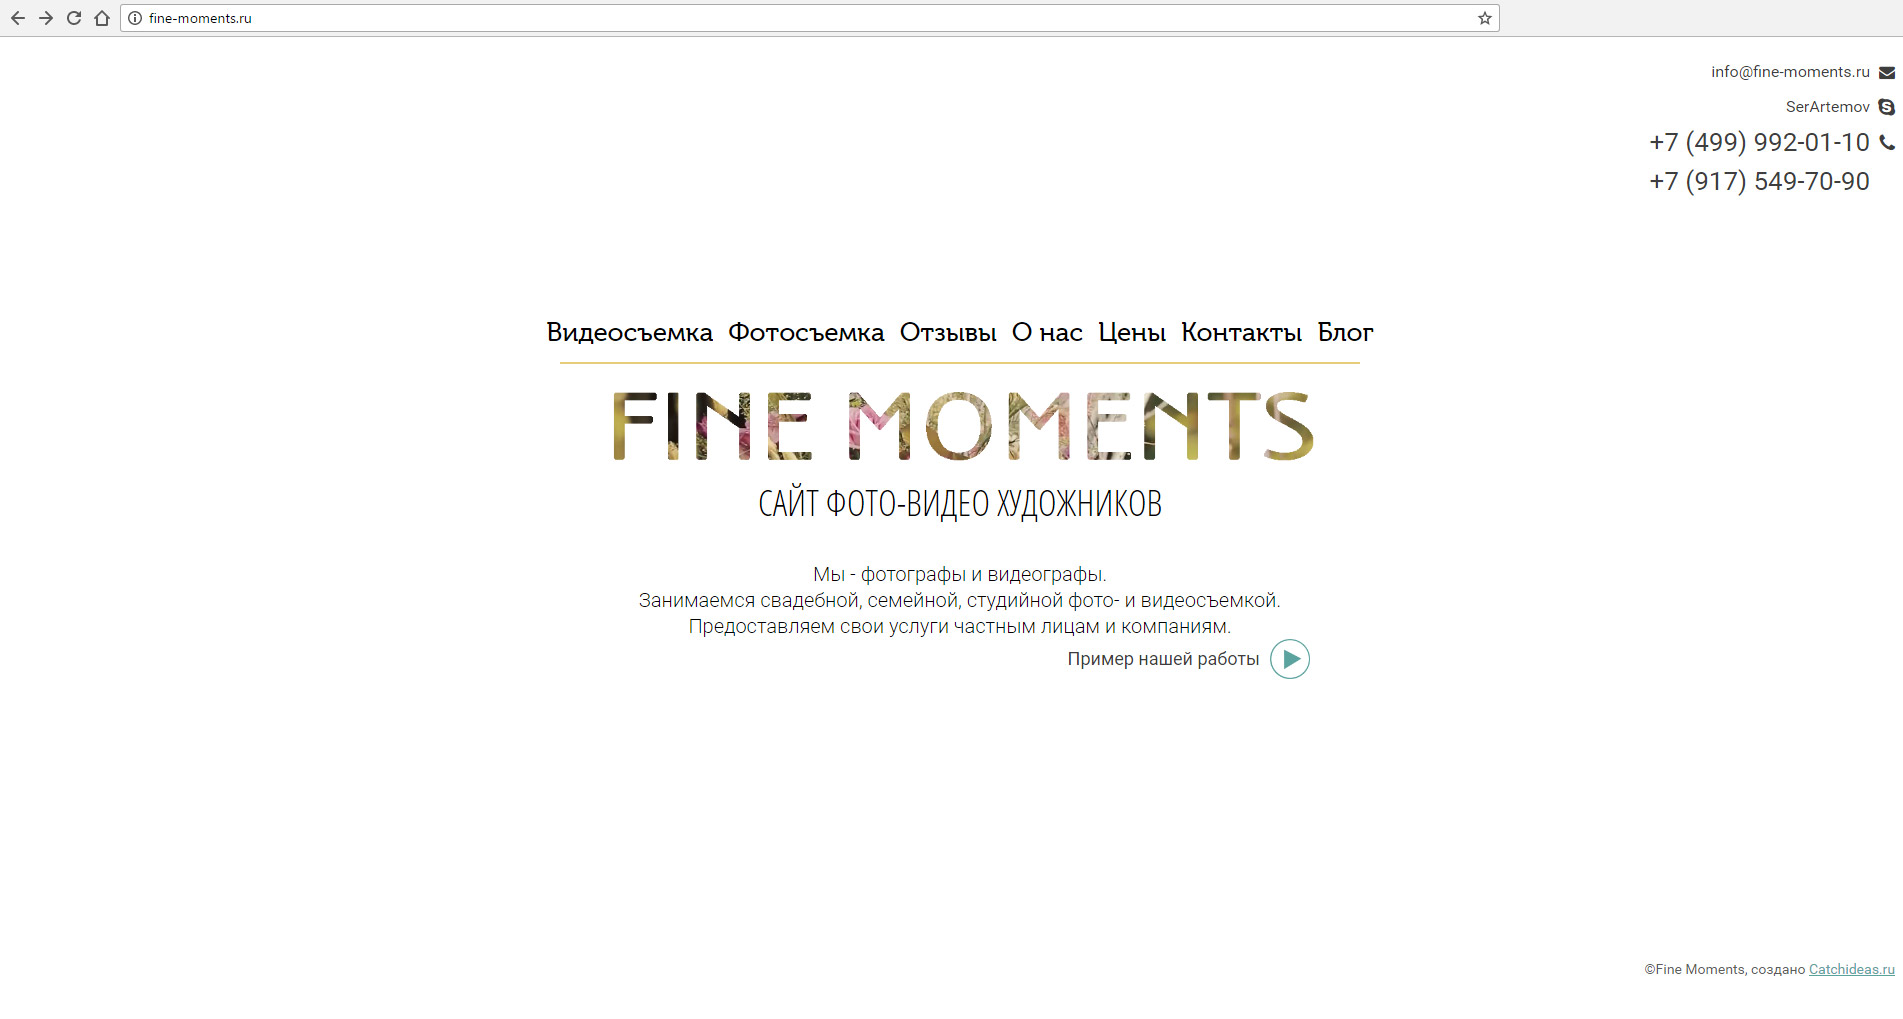 Fine-moments — фото-видео съемка